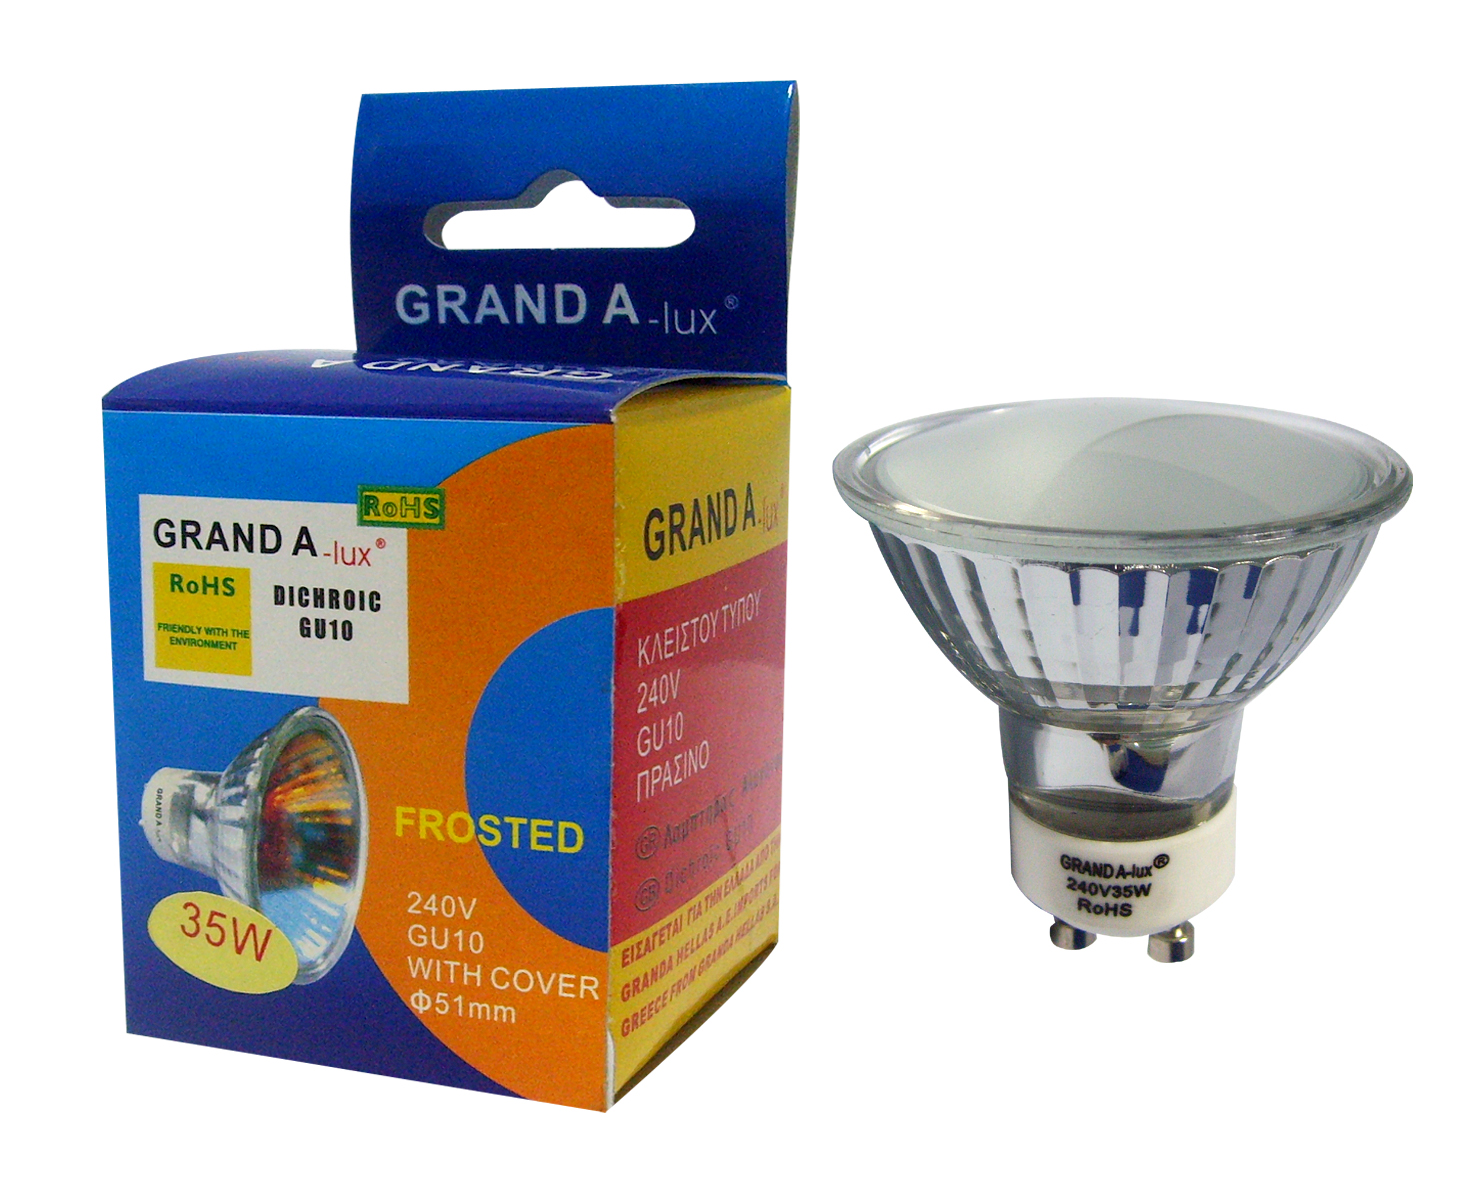 GU10 halogen lamps